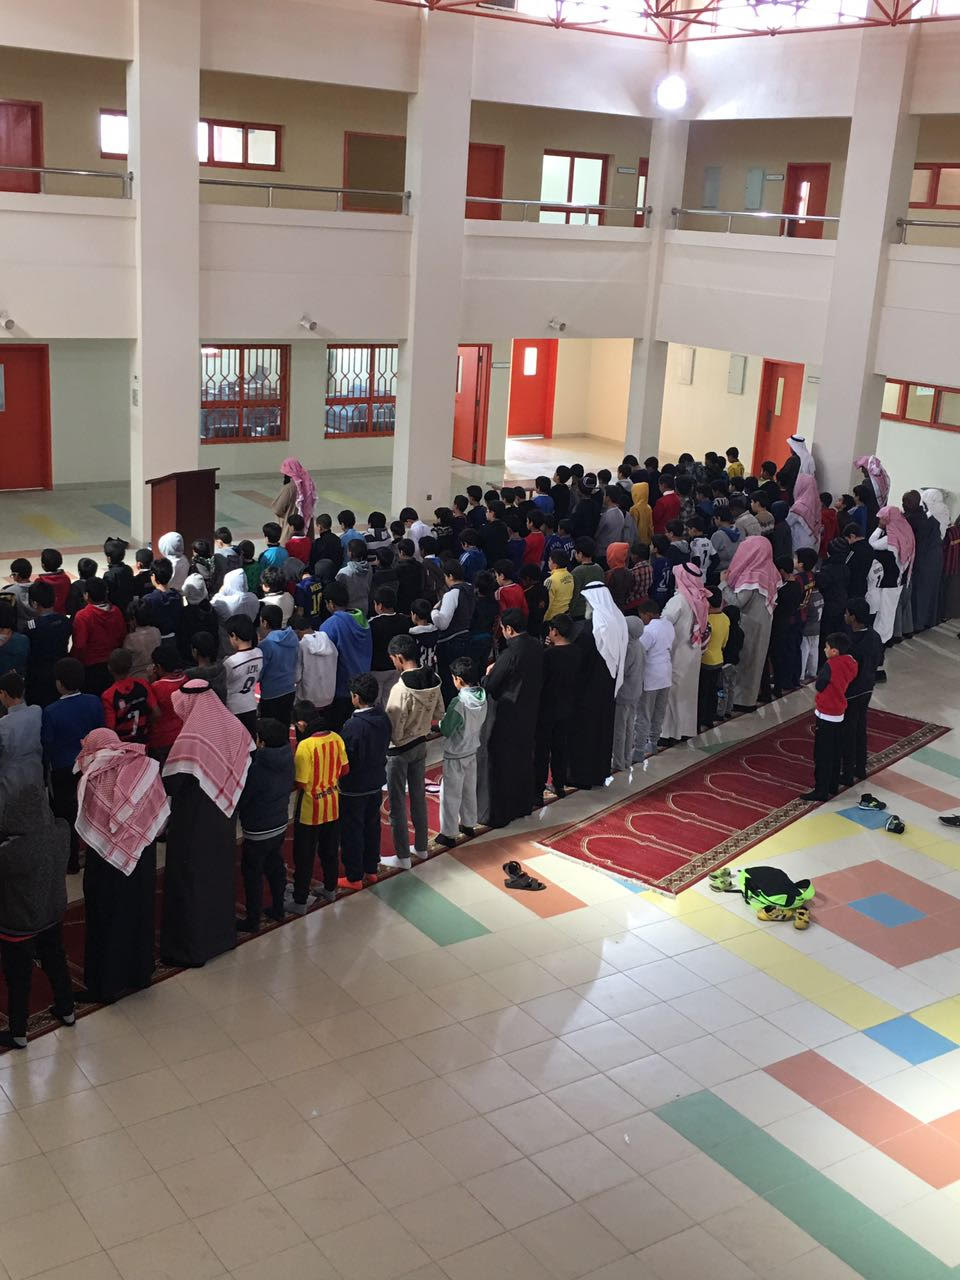 افتتاح مدرسة مصعب بن عمير الابتدائية بعد انتقالها للمبنى الجديد